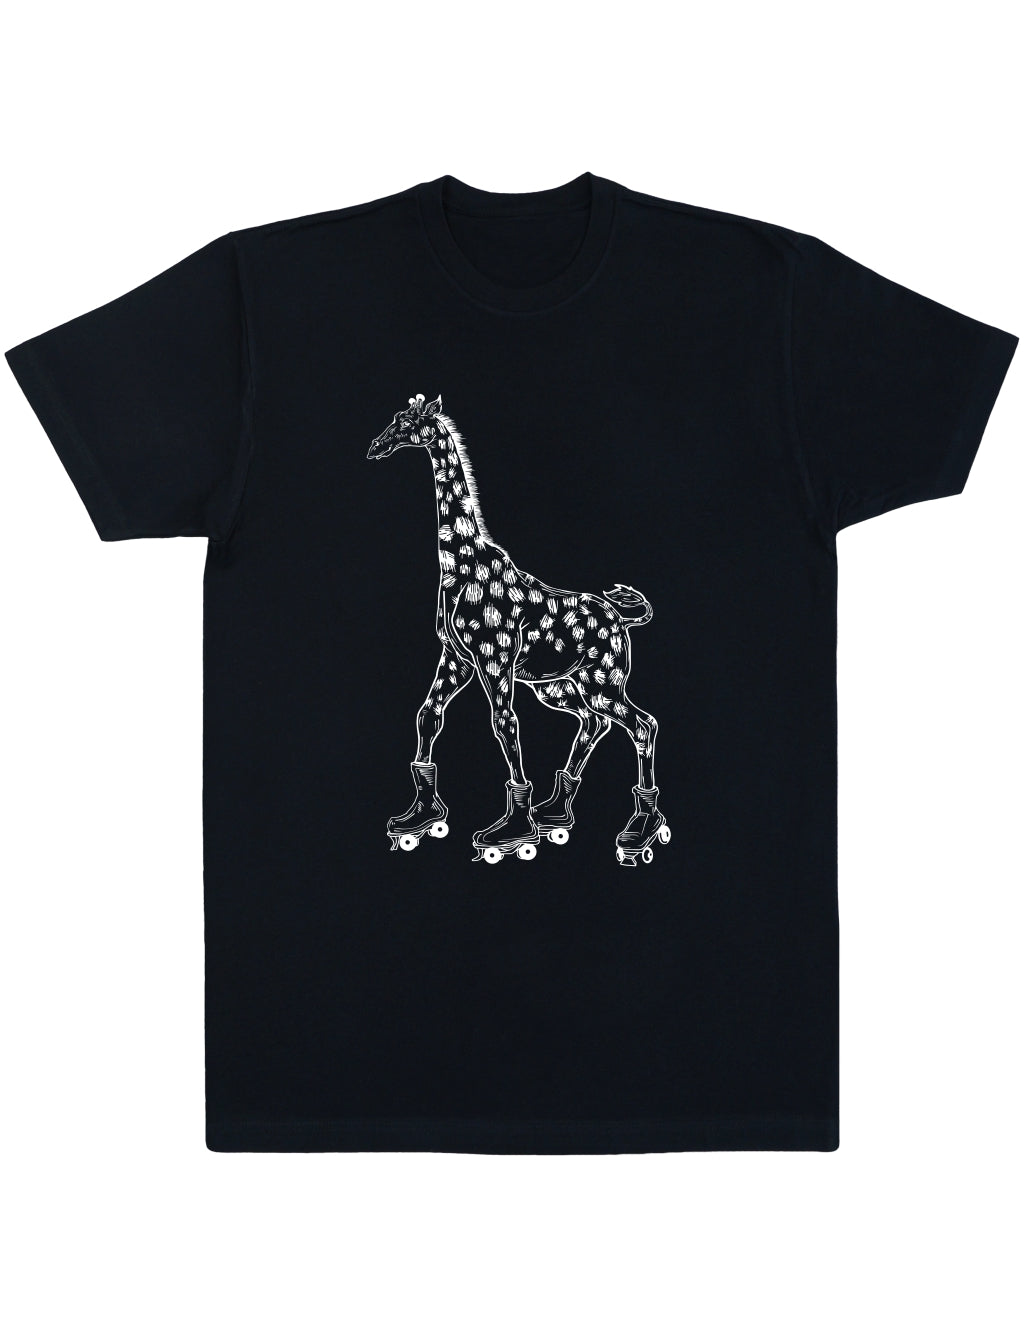 SEEMBO Giraffe Skater Funny Skating Roller Skates Men Cotton T-Shirt